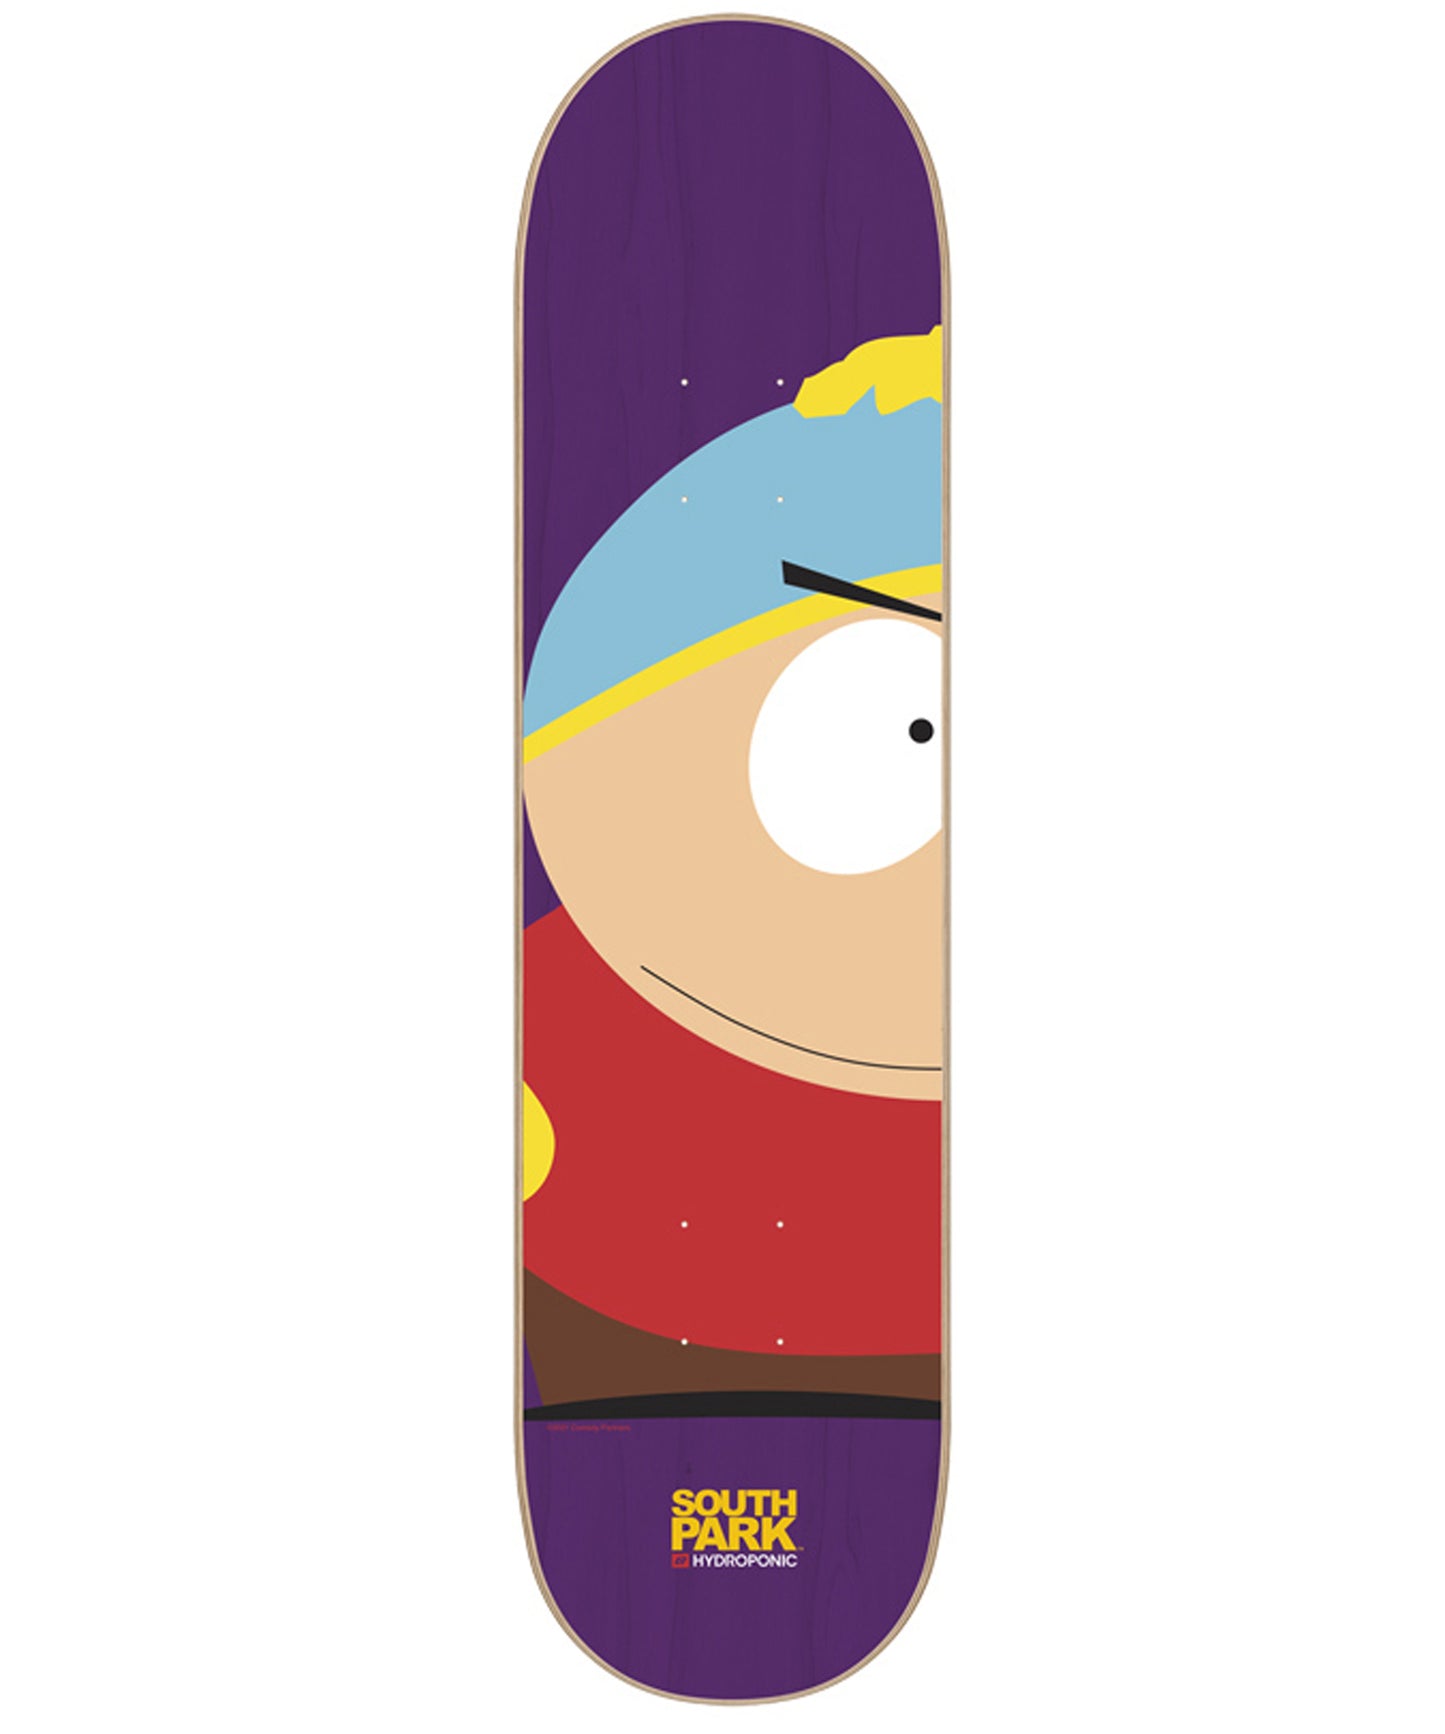 Tabla de skateboard Hydroponic South Park Cartman left de 8"  . Colaboración con la famosa serie South Park